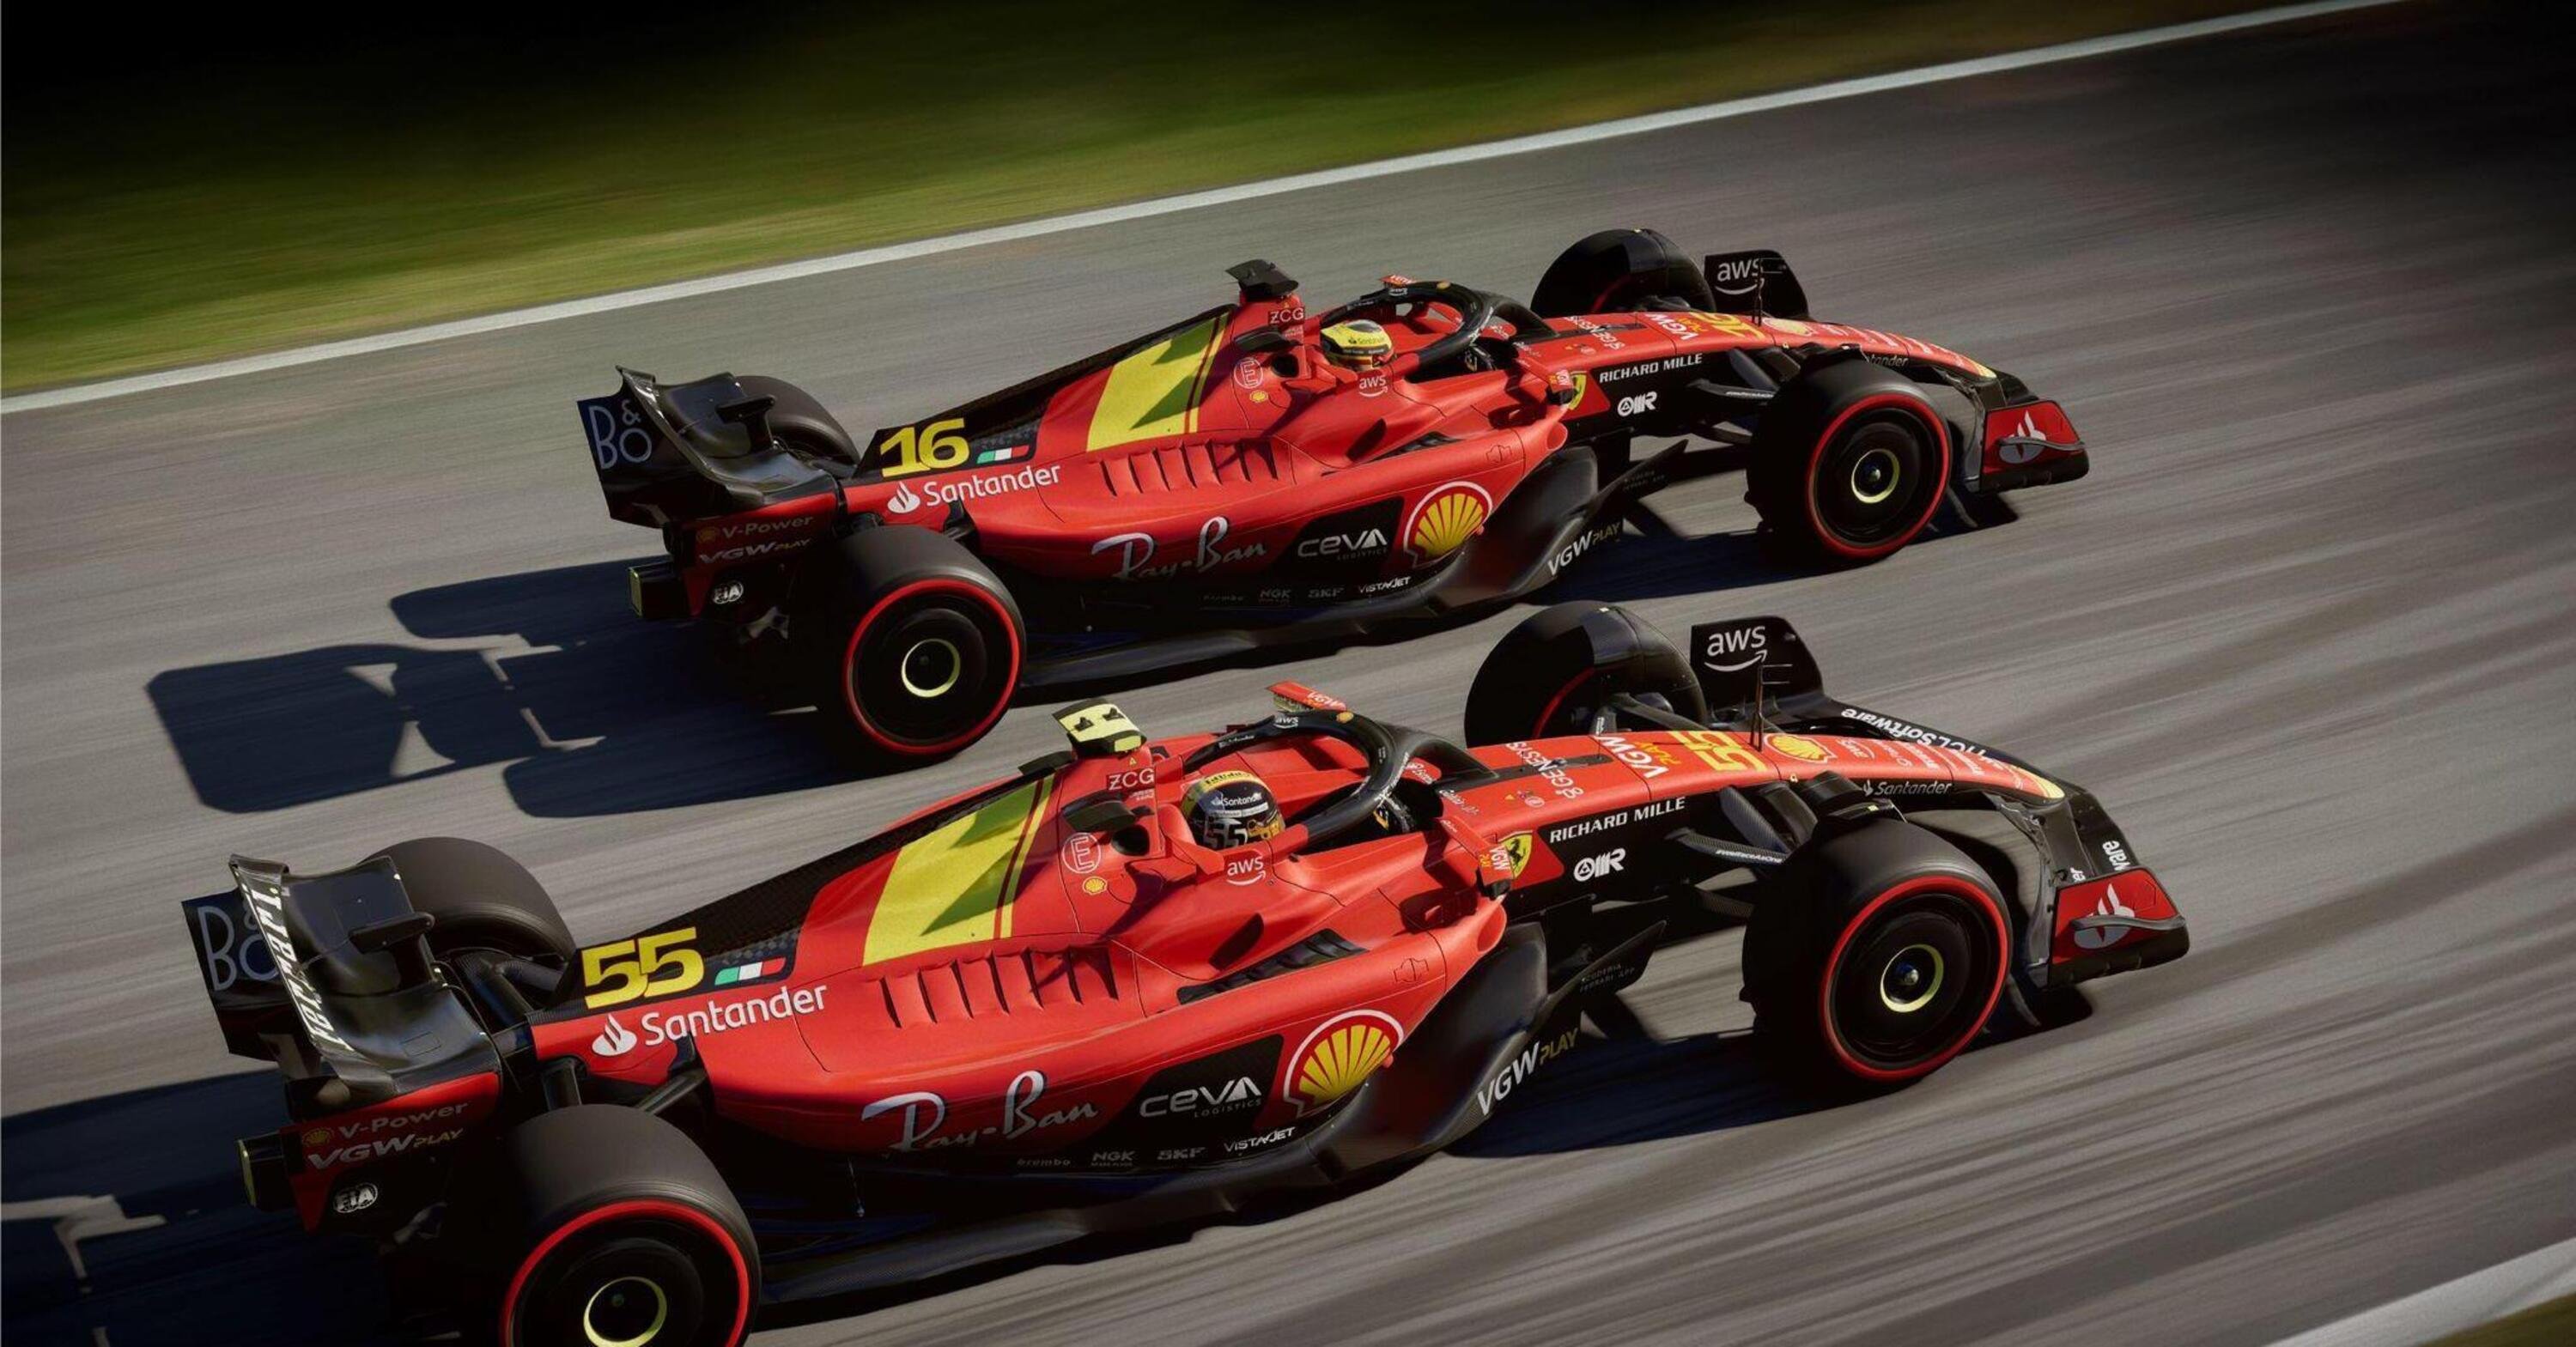 F1. Ecco gli aggiornamenti che Ferrari porterà a Monza - Formula 1 